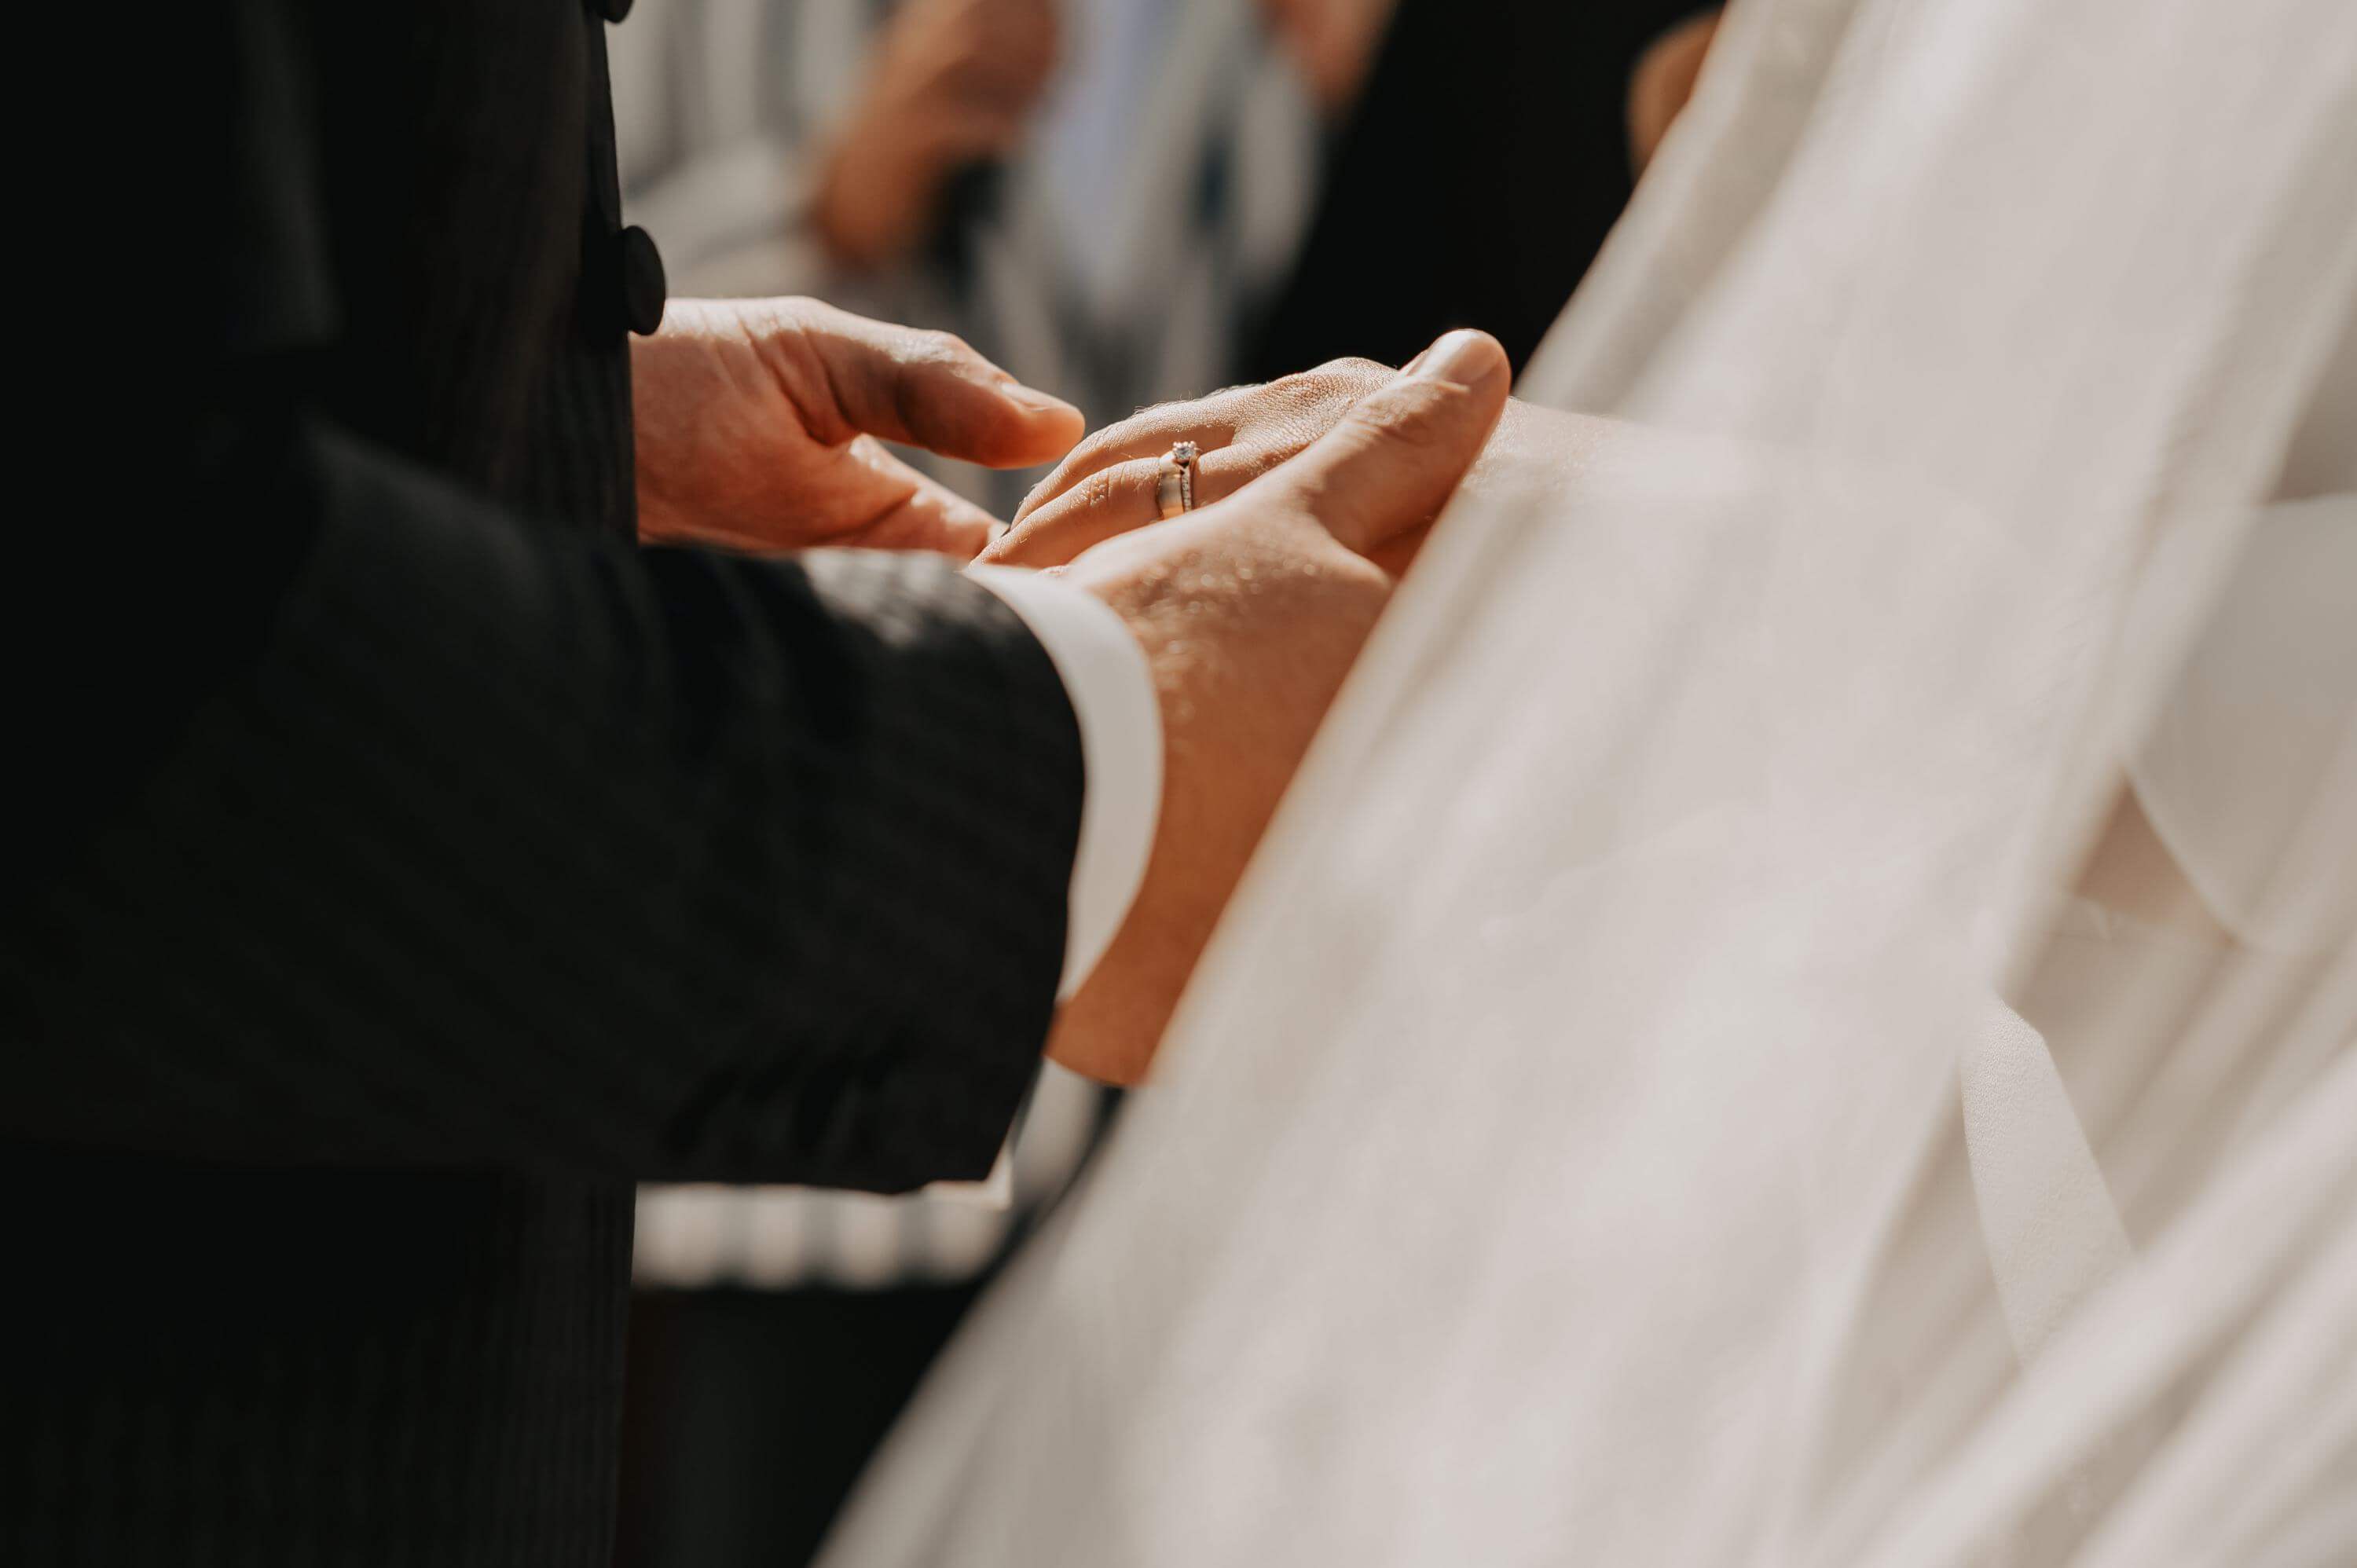 Nahaufnahme der Hand der Braut mit angestecktem Trauring mit Diamanten, die vom Bräutigam selbst gehalten wird.